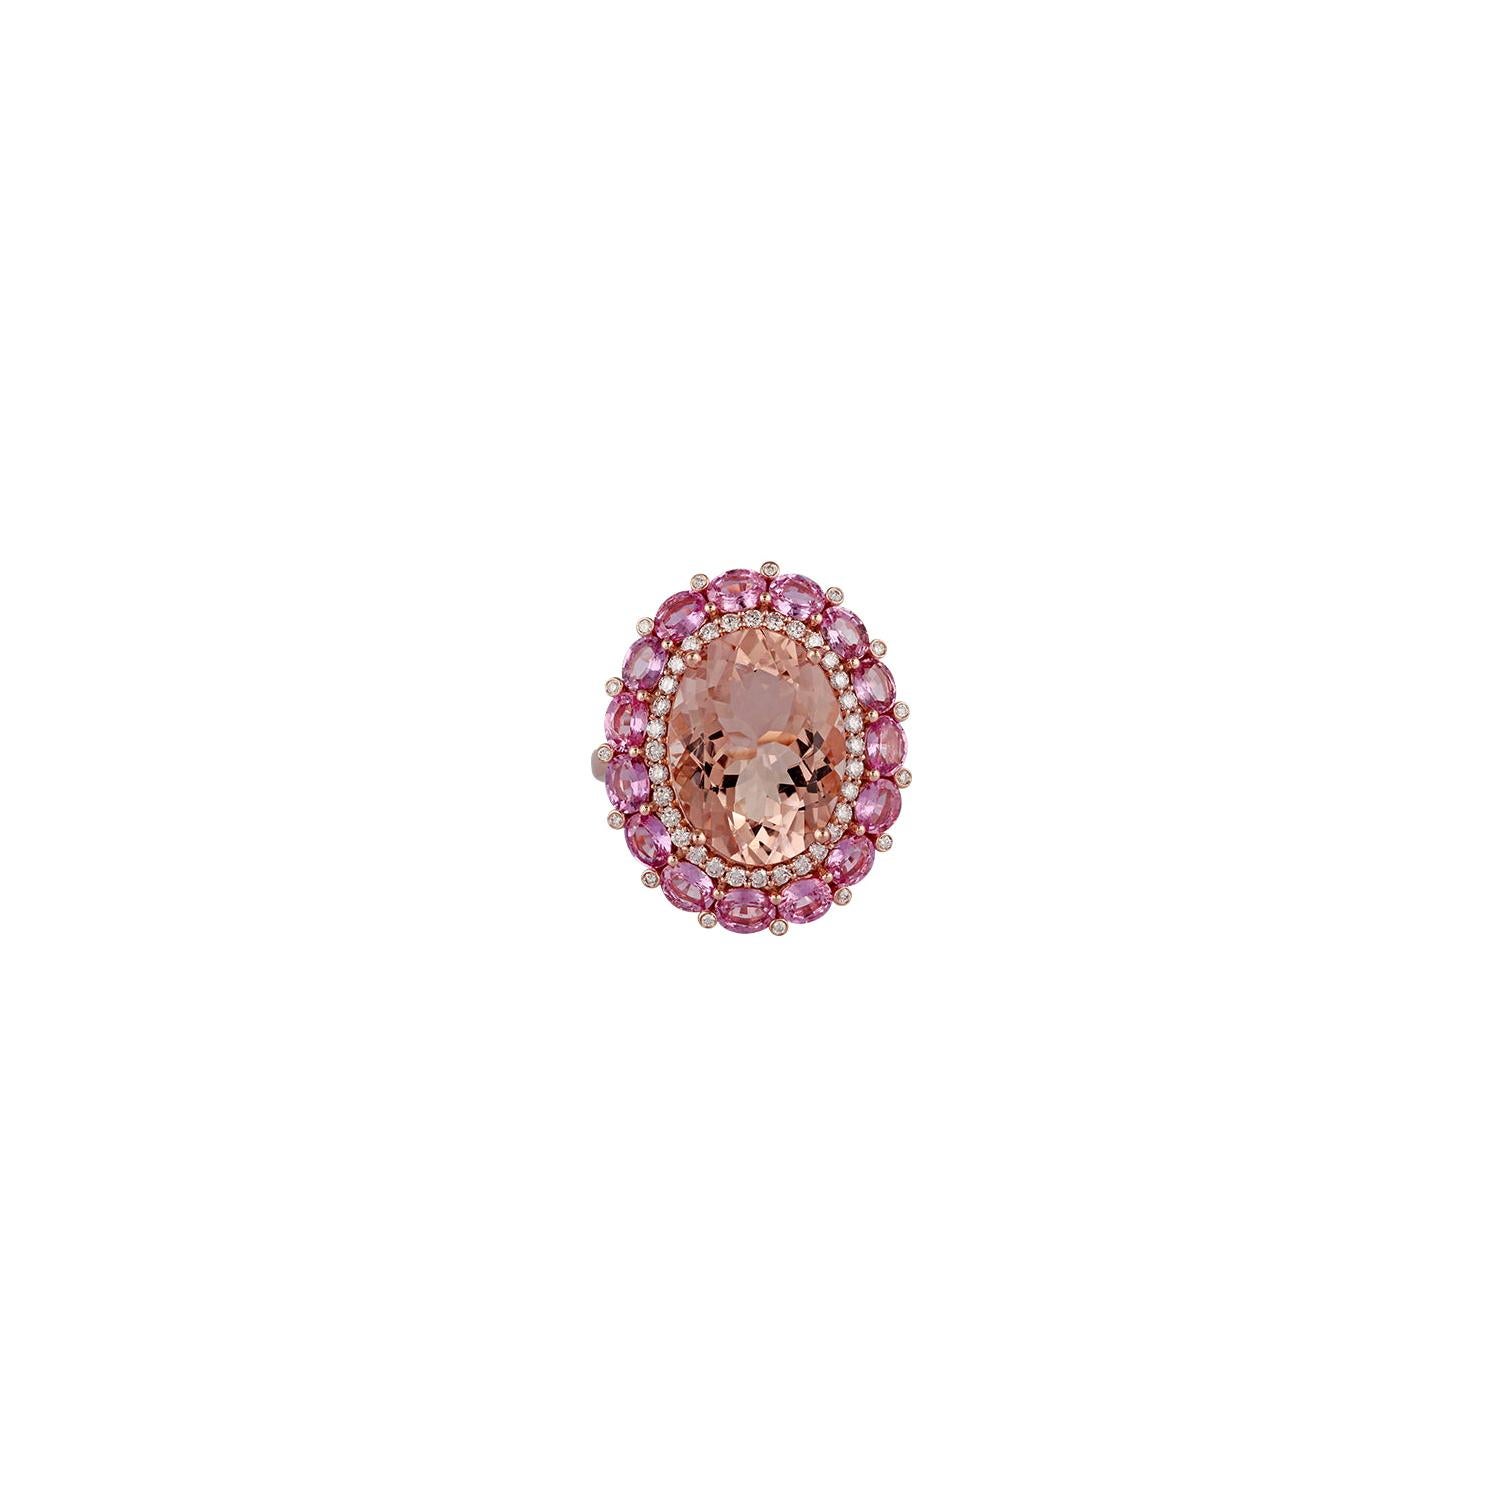 Morganite Pink Sapphire Diamond Ring in 18 Karat Rose Gold